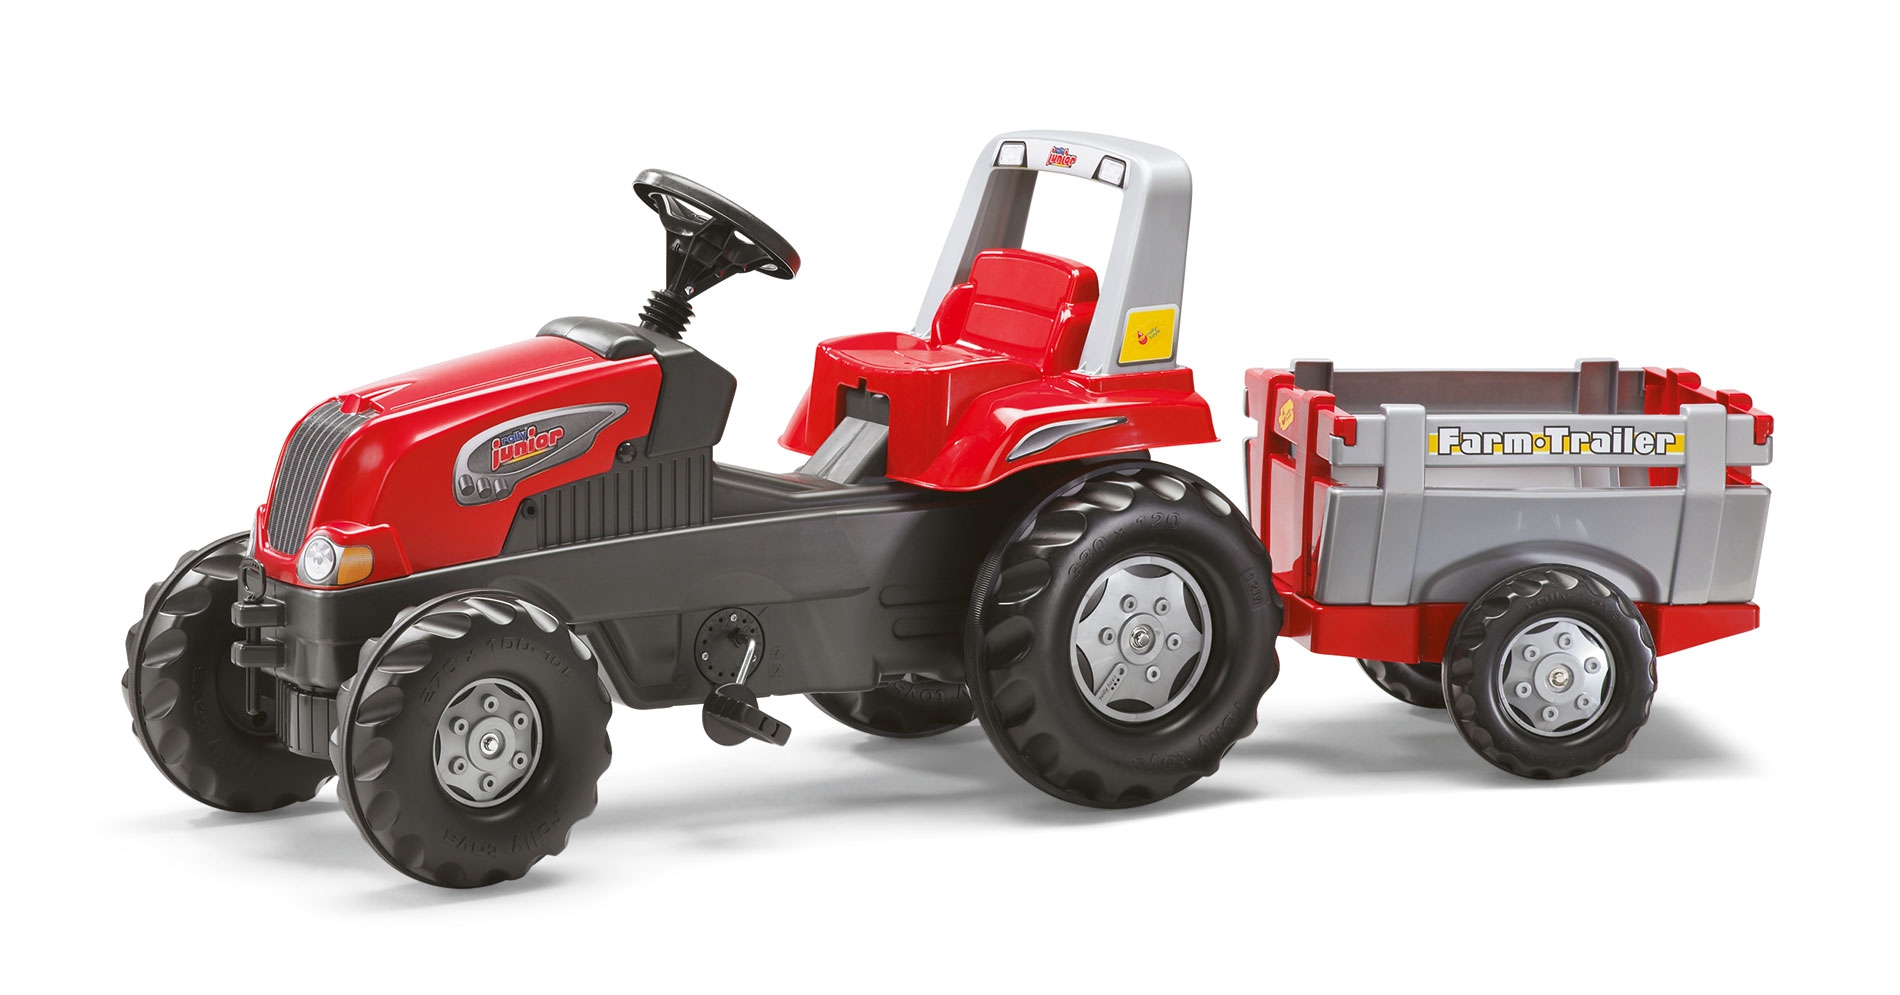 Traktor na pedały przyczepa junior 3-8 lat do 50 kg, zabawka dla dzieci, Rolly Toys